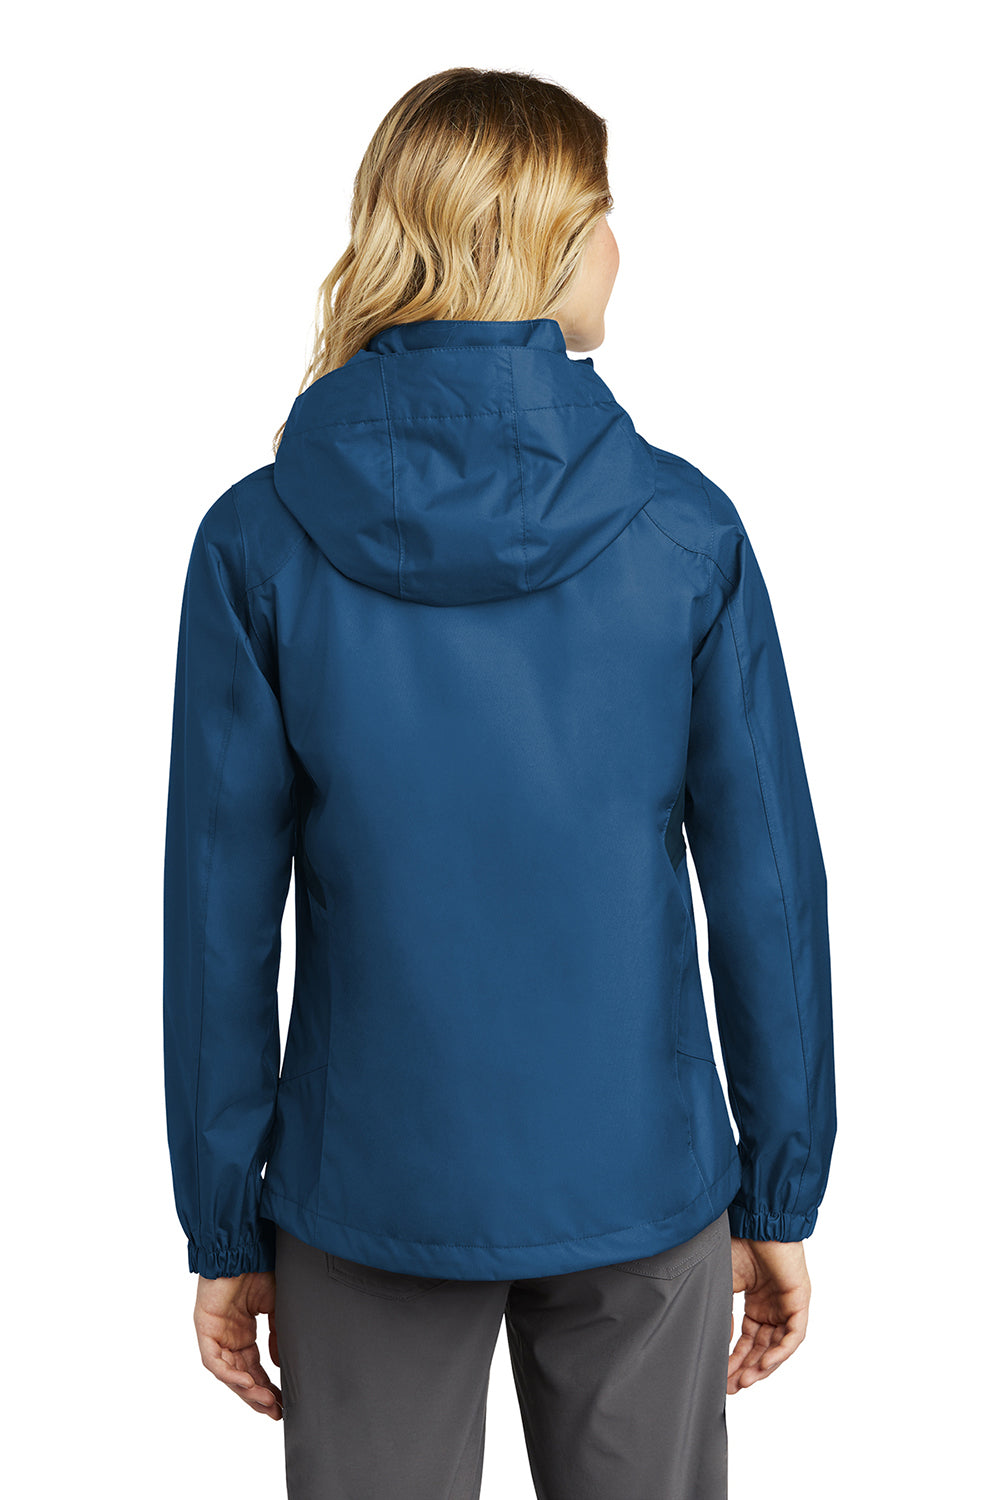 Eddie Bauer EB551 Womens Waterproof Full Zip Hooded Jacket Deep Sea Blue Model Back